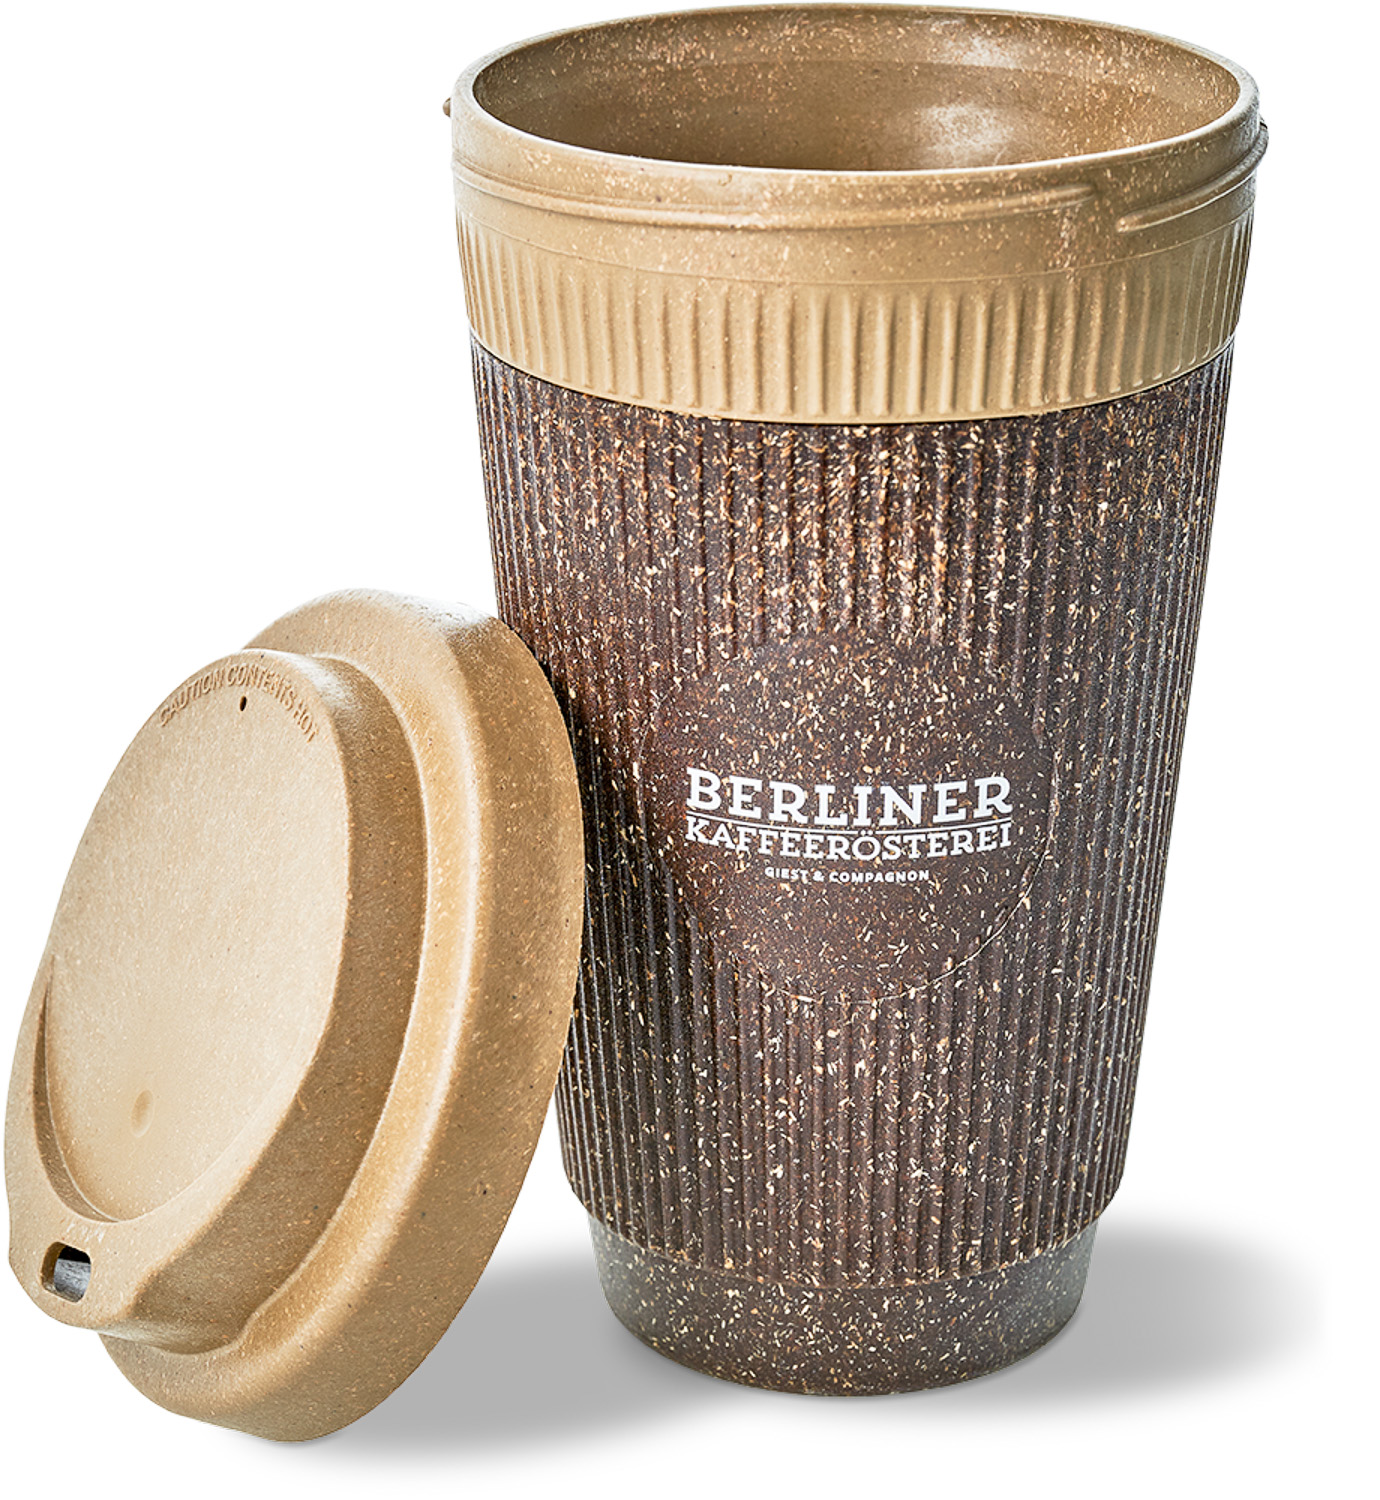 Wiederverwendbarer Kaffeebecher plastikfrei aus Kaffeesatz und Holzfasern 350ml mit Deckel